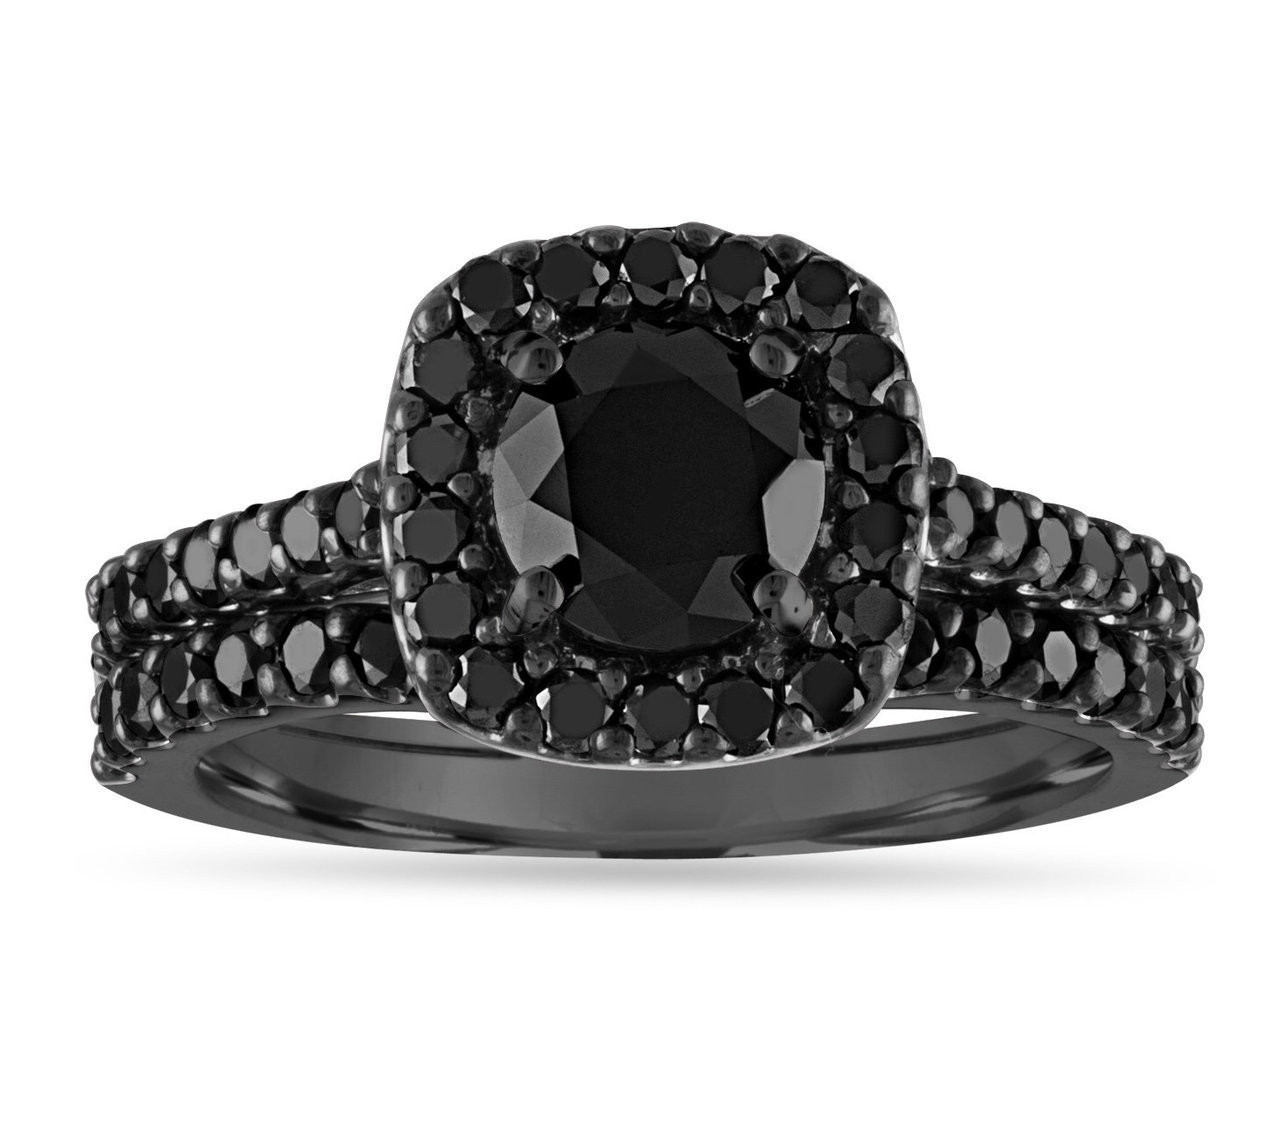 Unique Black Diamond Engagement Rings
 20 Unique Black Diamond Engagement Rings For Women Live